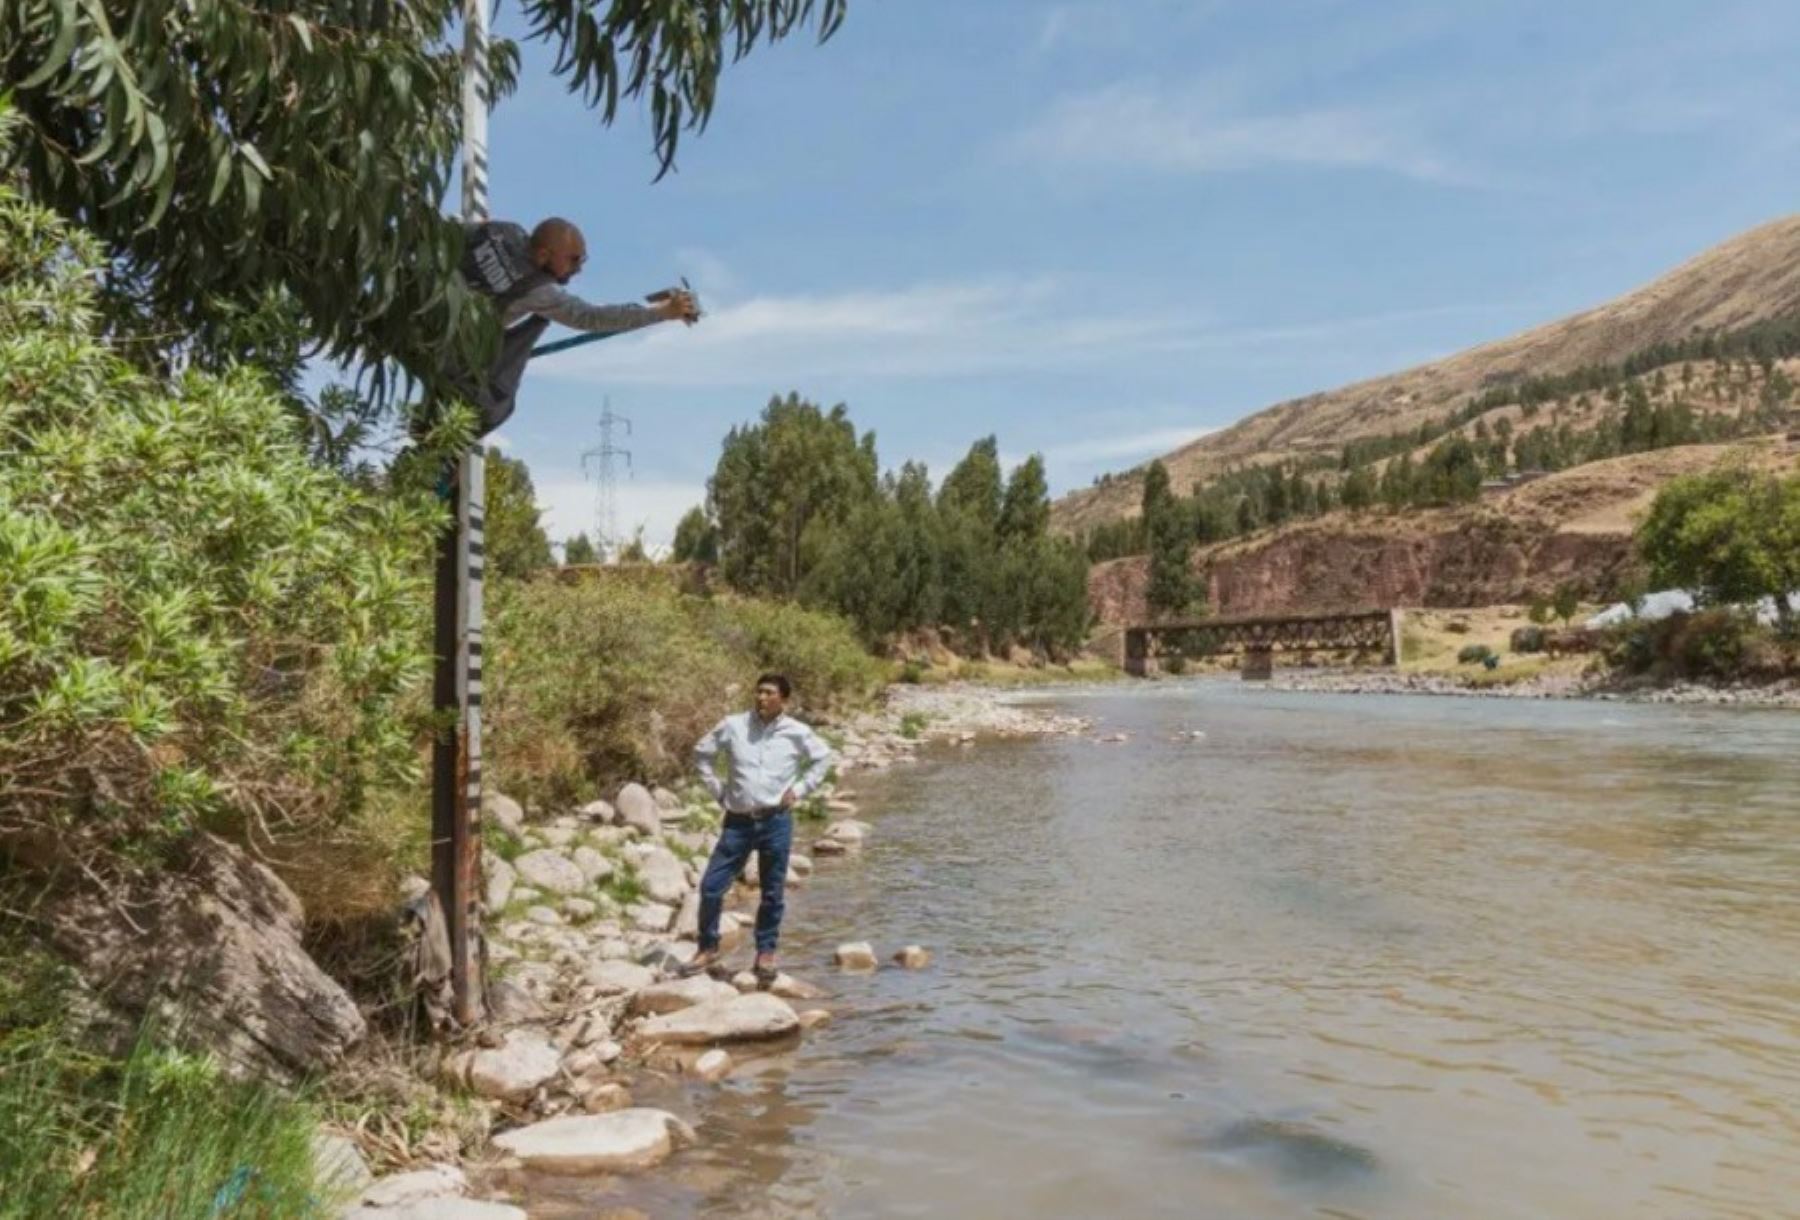 El Servicio nacional de Meteorología e Hidrología del Perú (Senamhi) y Practical Action realizaron la instalación y puesta en marcha de cuatro estaciones hidrológicas a lo largo del río Vilcanota en las zonas de Checacupe, Urcos, Pisac y Pachar.